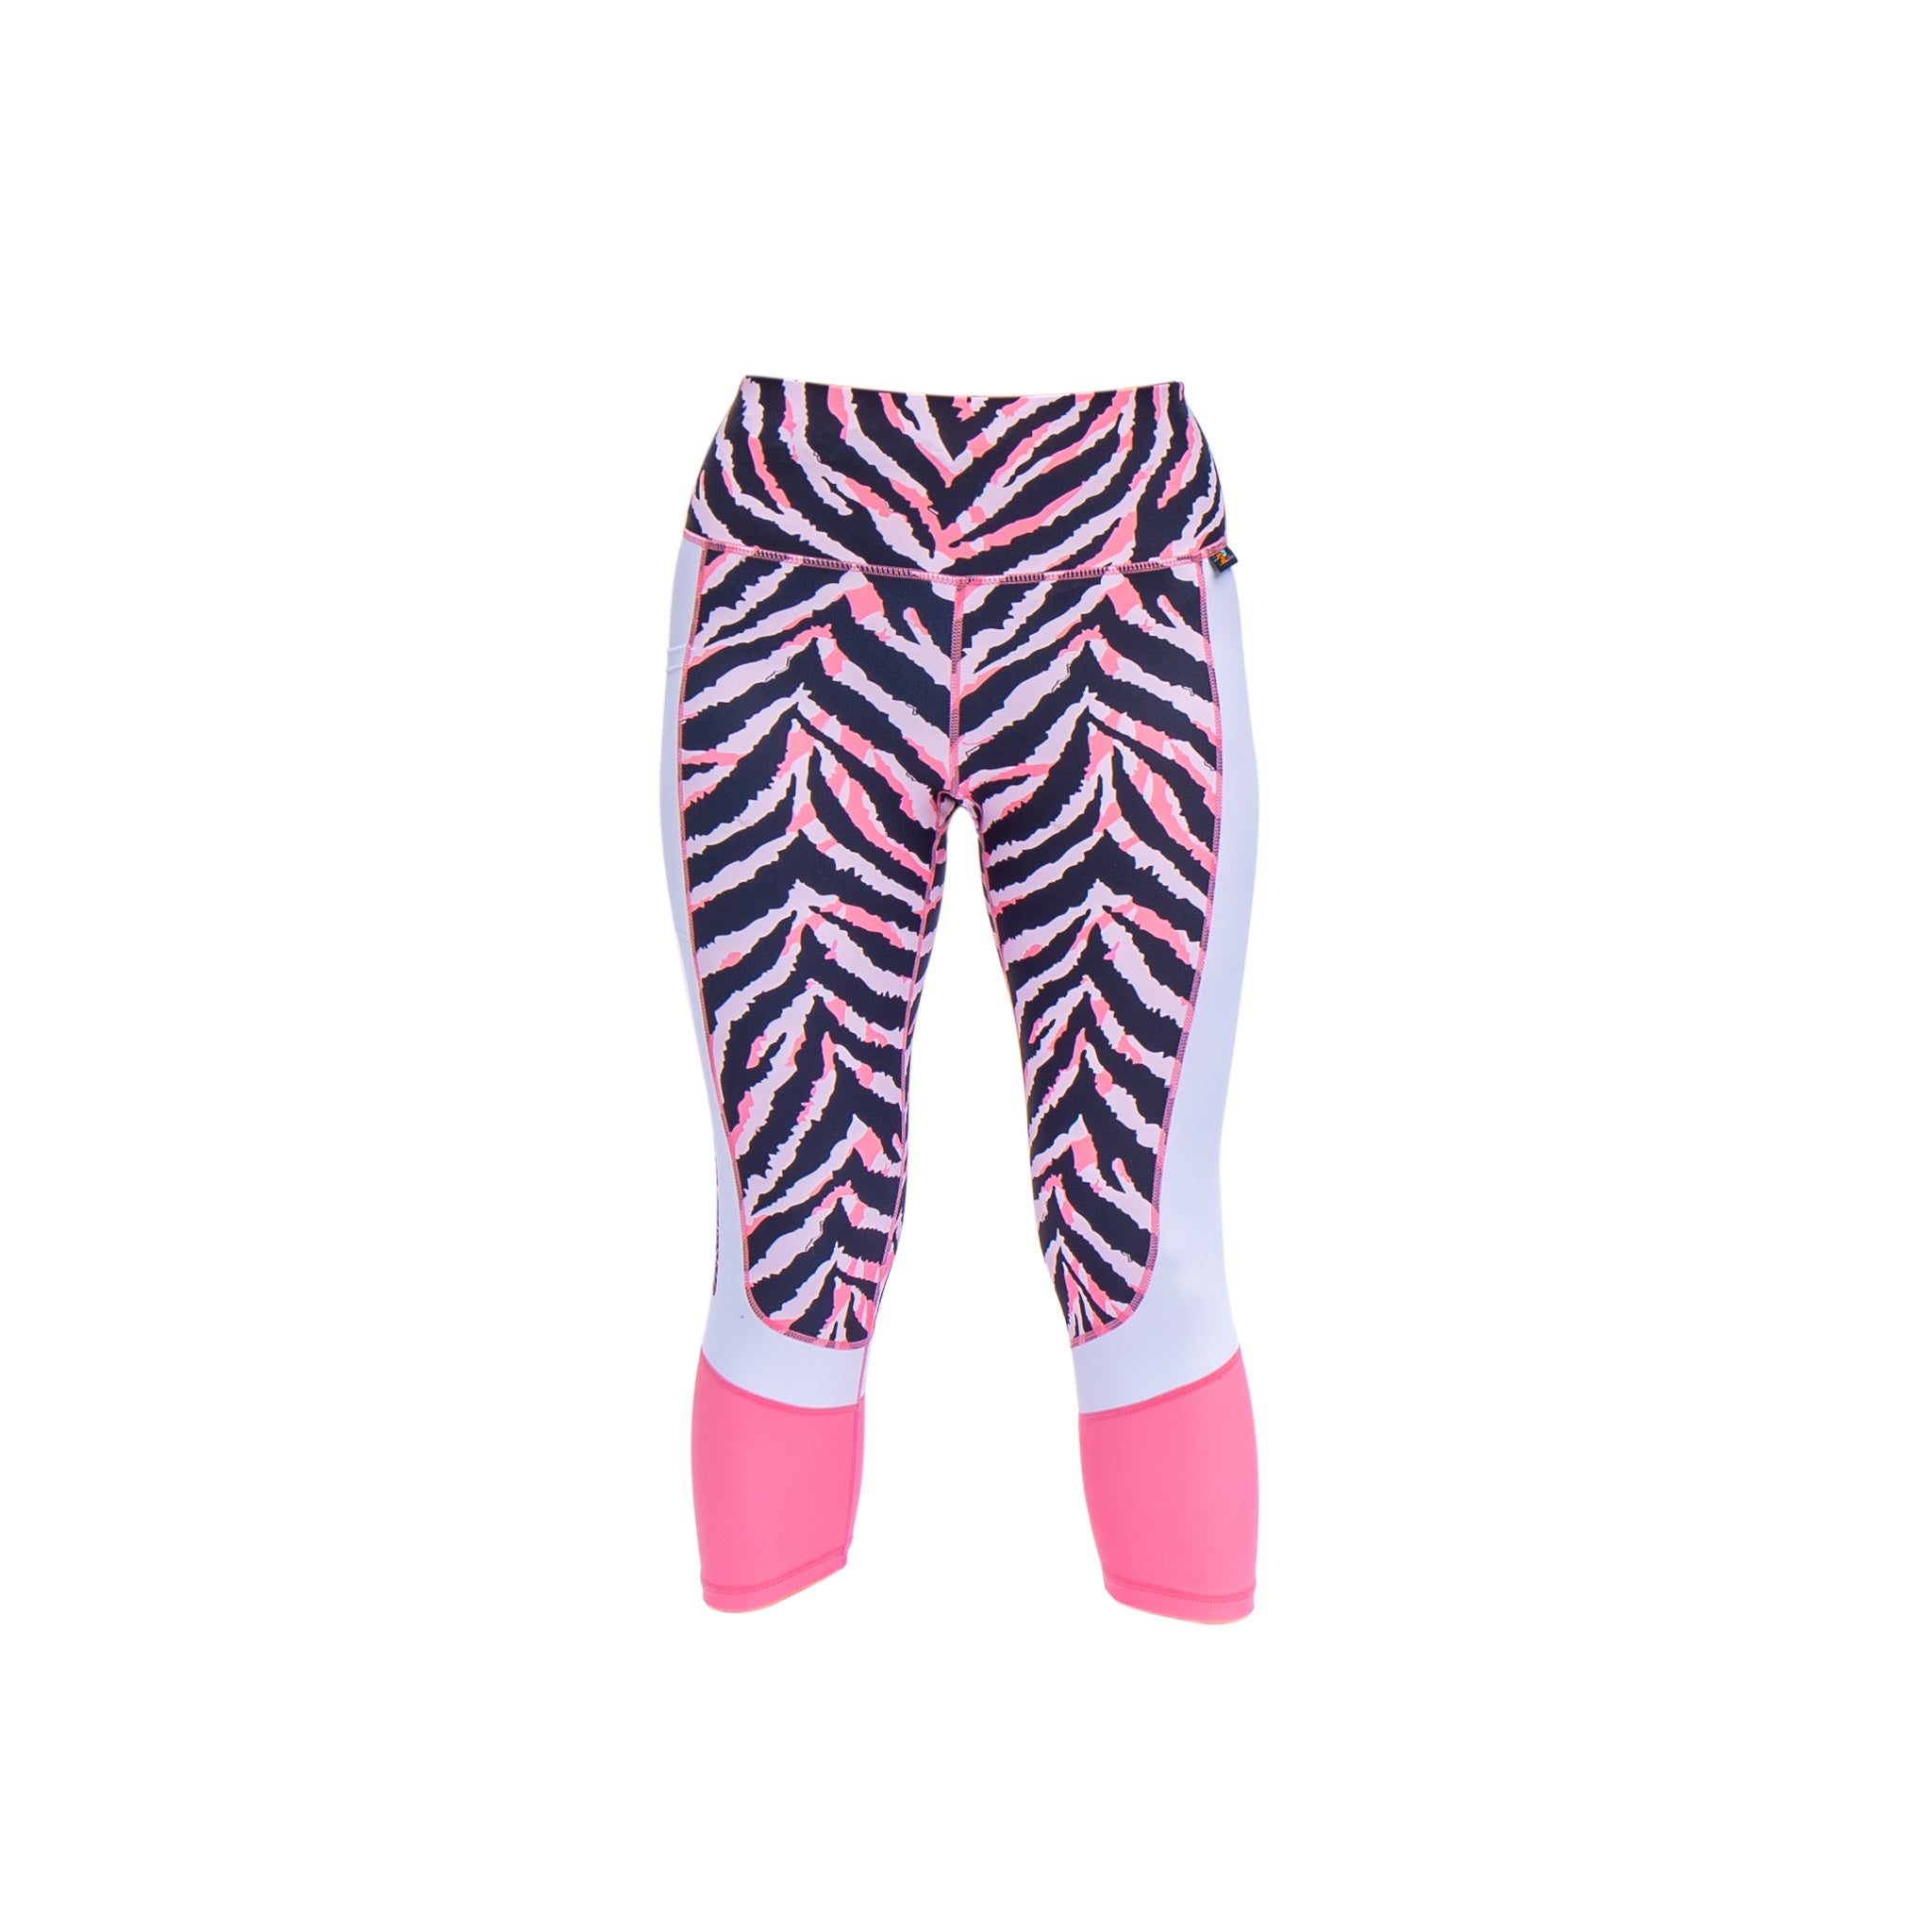 Multi Color Animal Print Bright Leggings 1980s Pants Zebra Cheetah